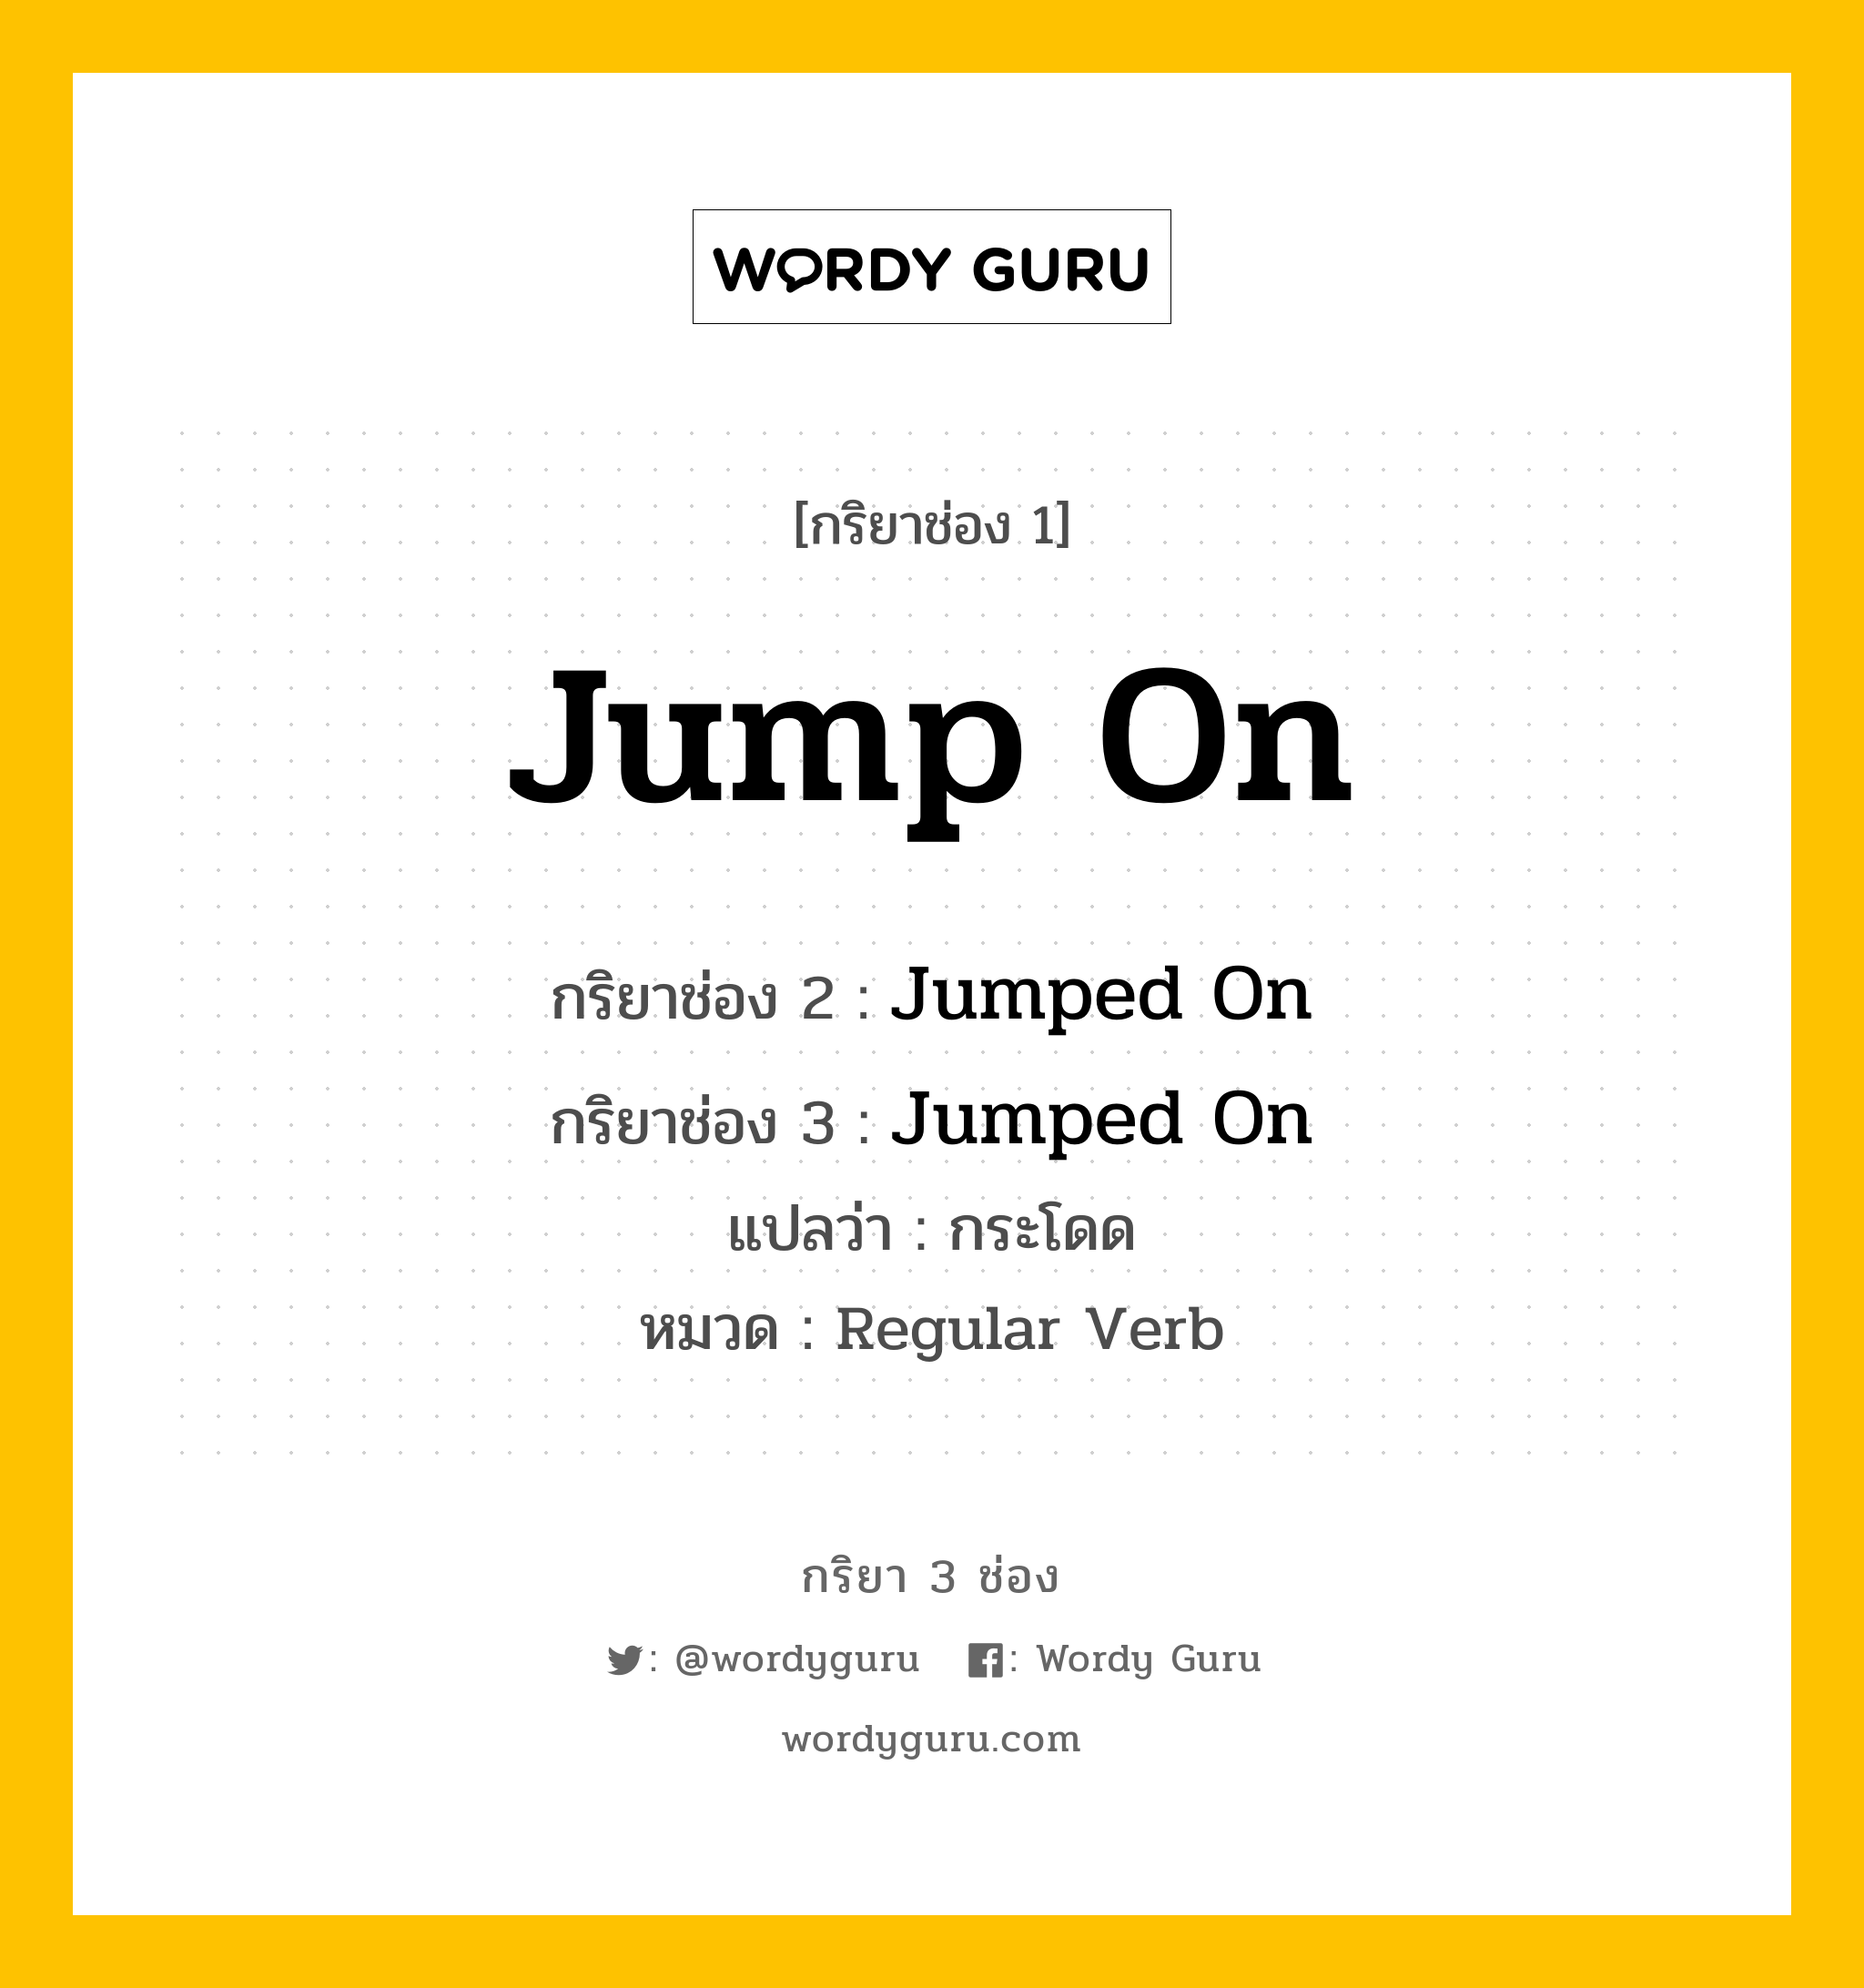 กริยา 3 ช่อง: Jump On ช่อง 2 Jump On ช่อง 3 คืออะไร, กริยาช่อง 1 Jump On กริยาช่อง 2 Jumped On กริยาช่อง 3 Jumped On แปลว่า กระโดด หมวด Regular Verb หมวด Regular Verb